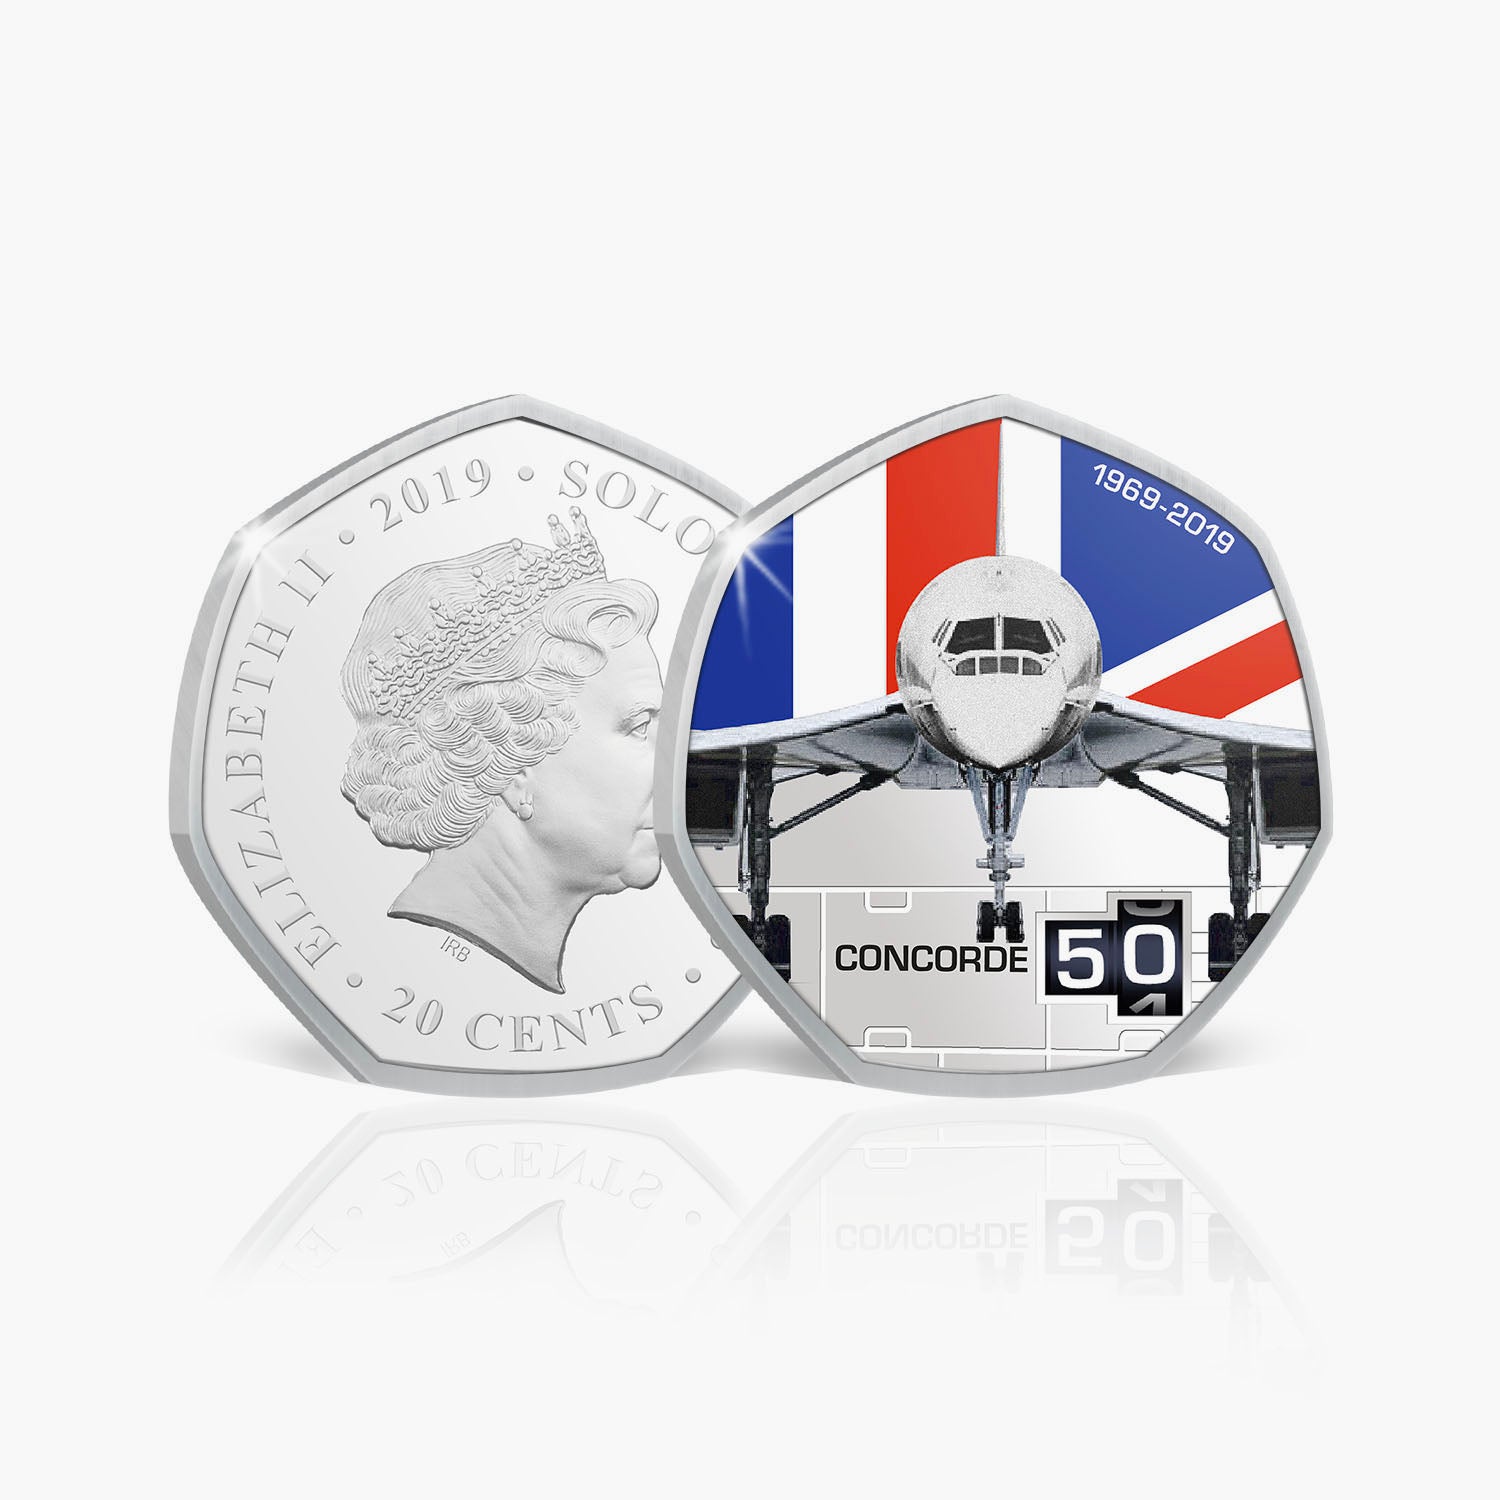 Collection complète de pièces de monnaie BU du 50e anniversaire de Concorde